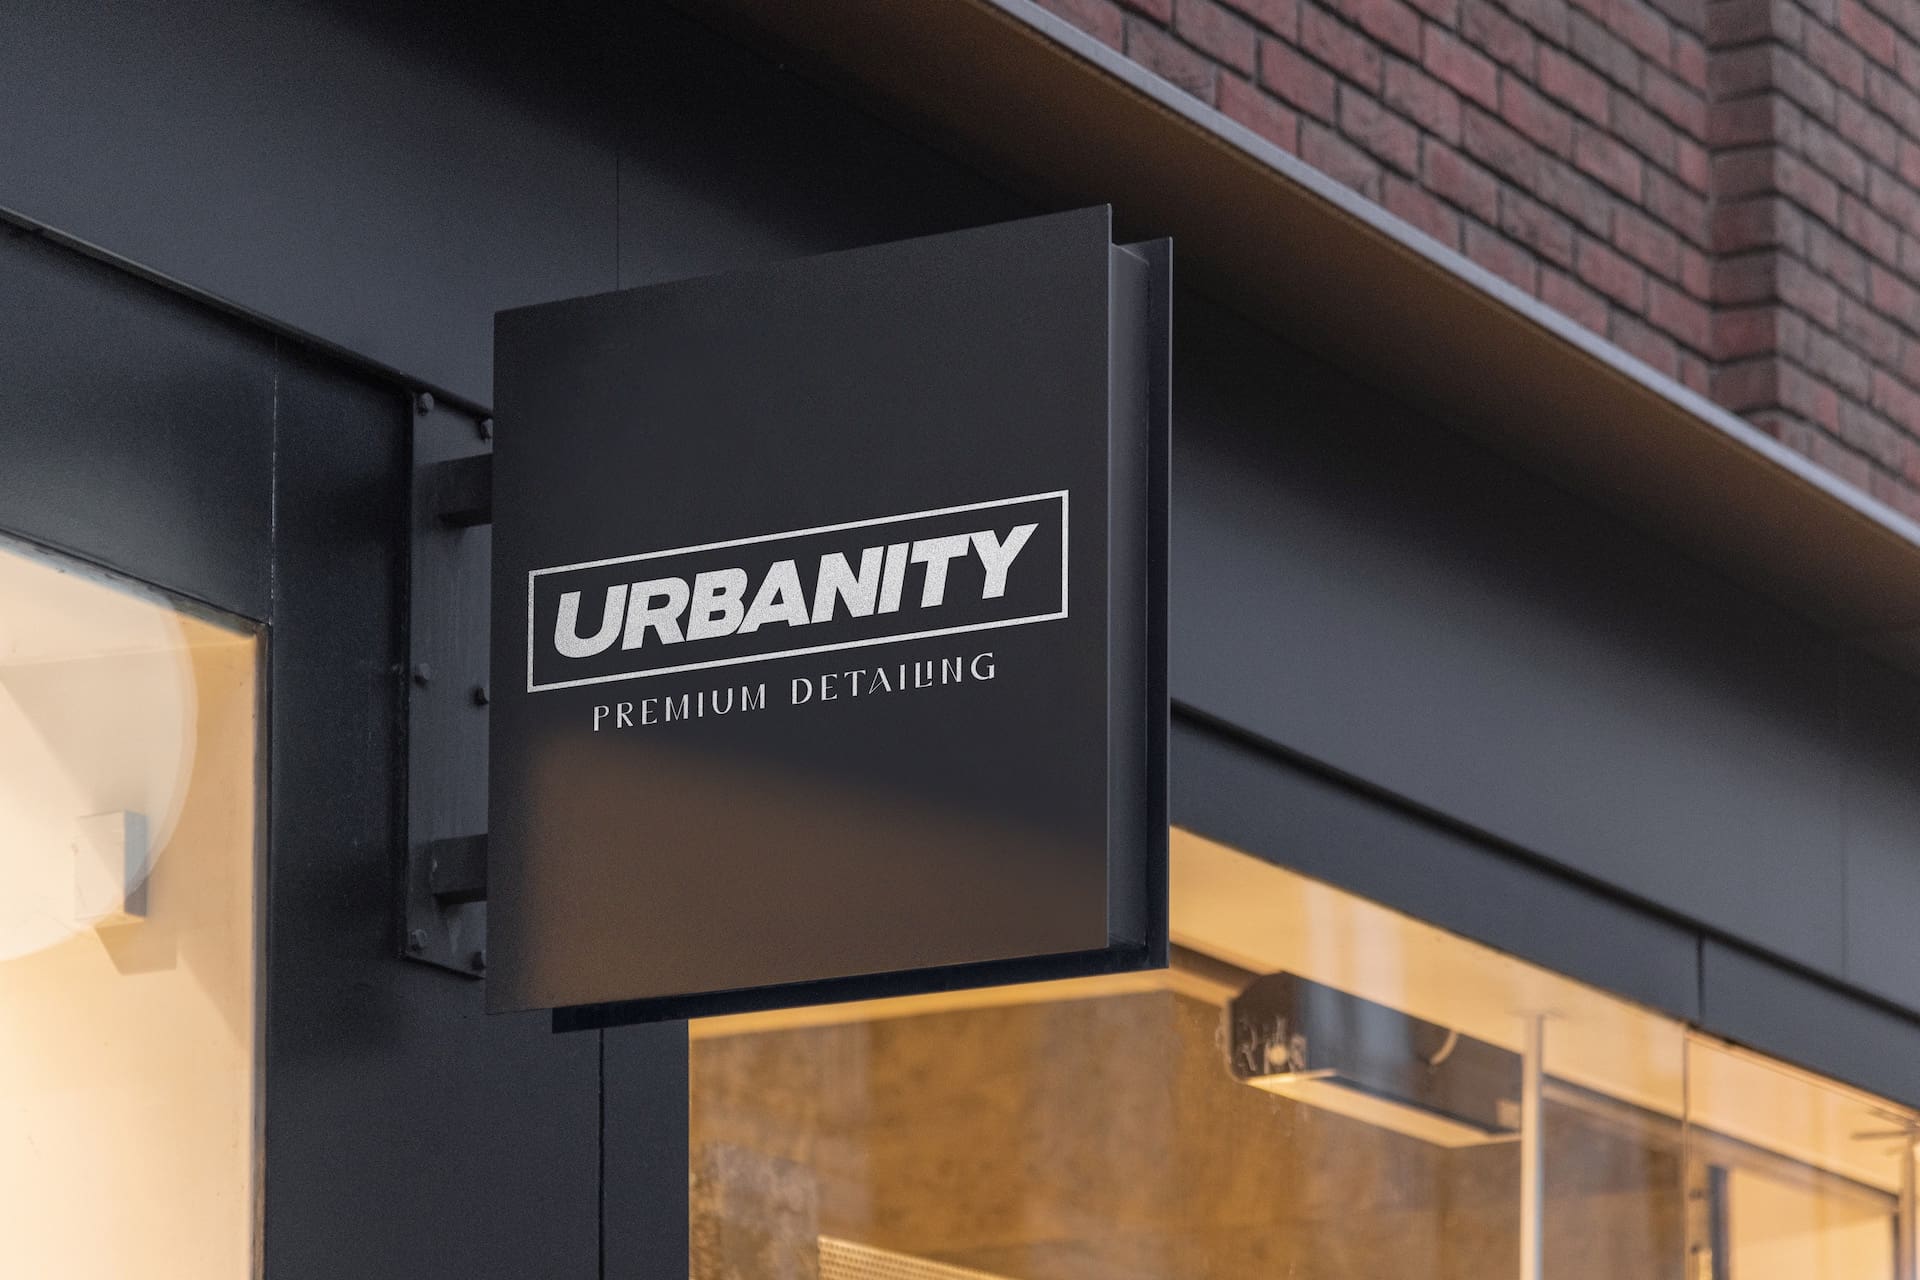 Branding for Urbanity Premium Detailing by Spacey Studios